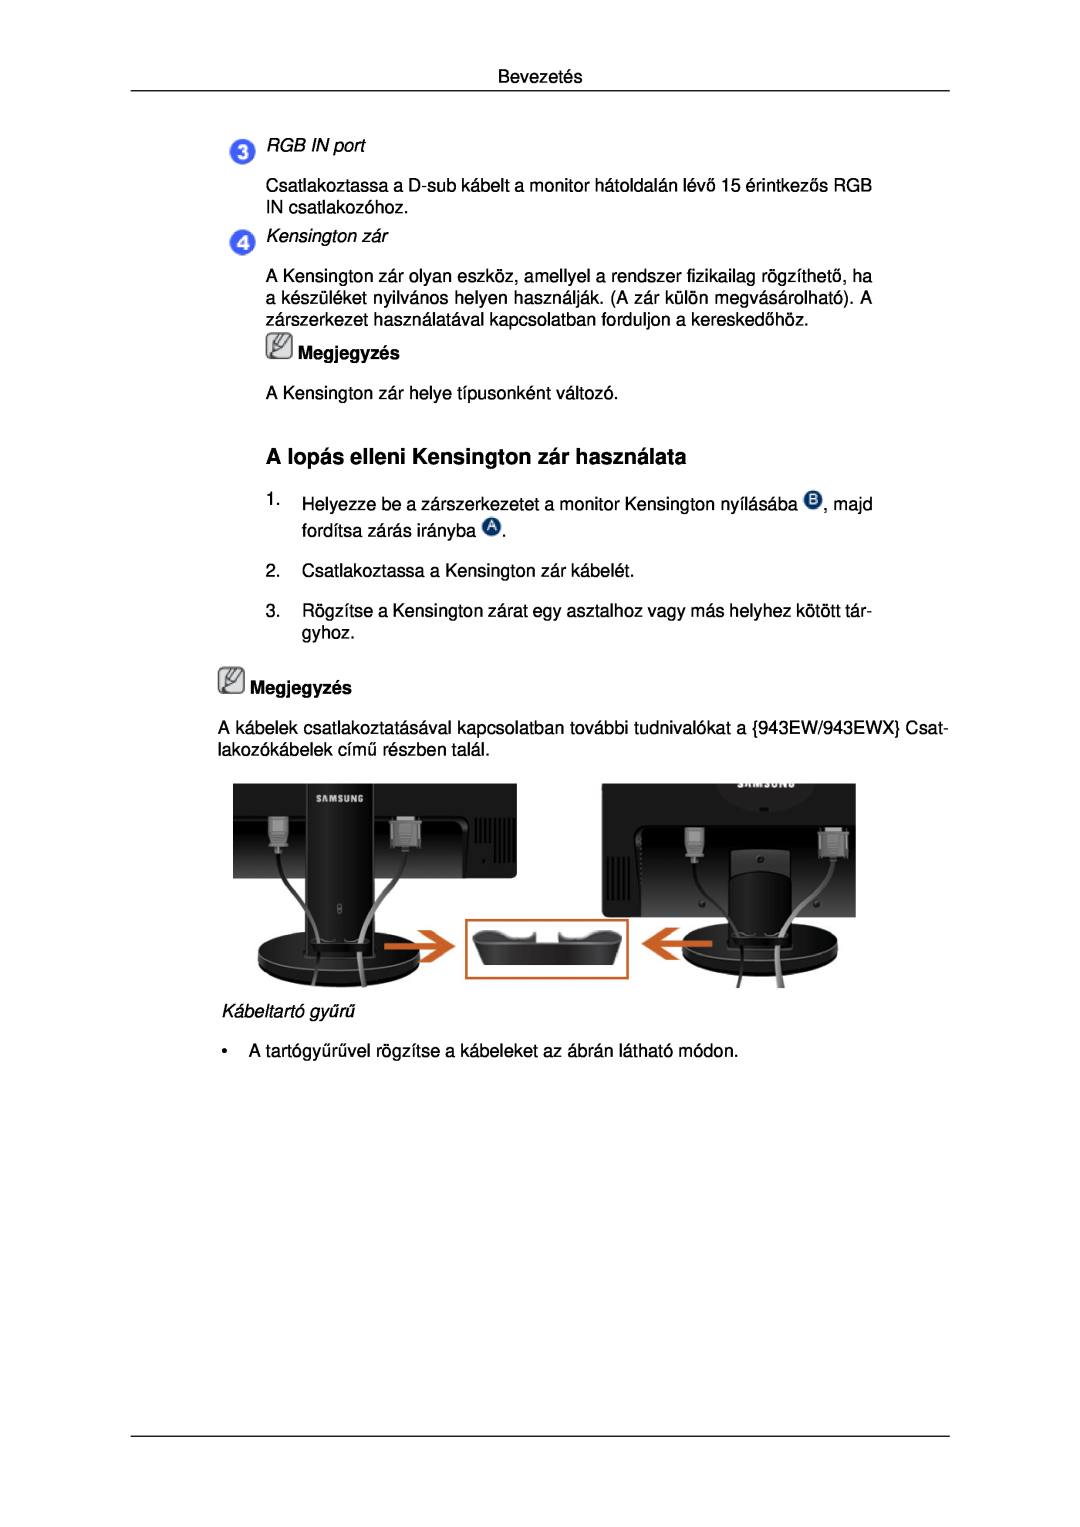 Samsung LS19MYDEBCBEDC, LS22MYDEBCA/EN manual A lopás elleni Kensington zár használata, RGB IN port, Kábeltartó gyűrű 